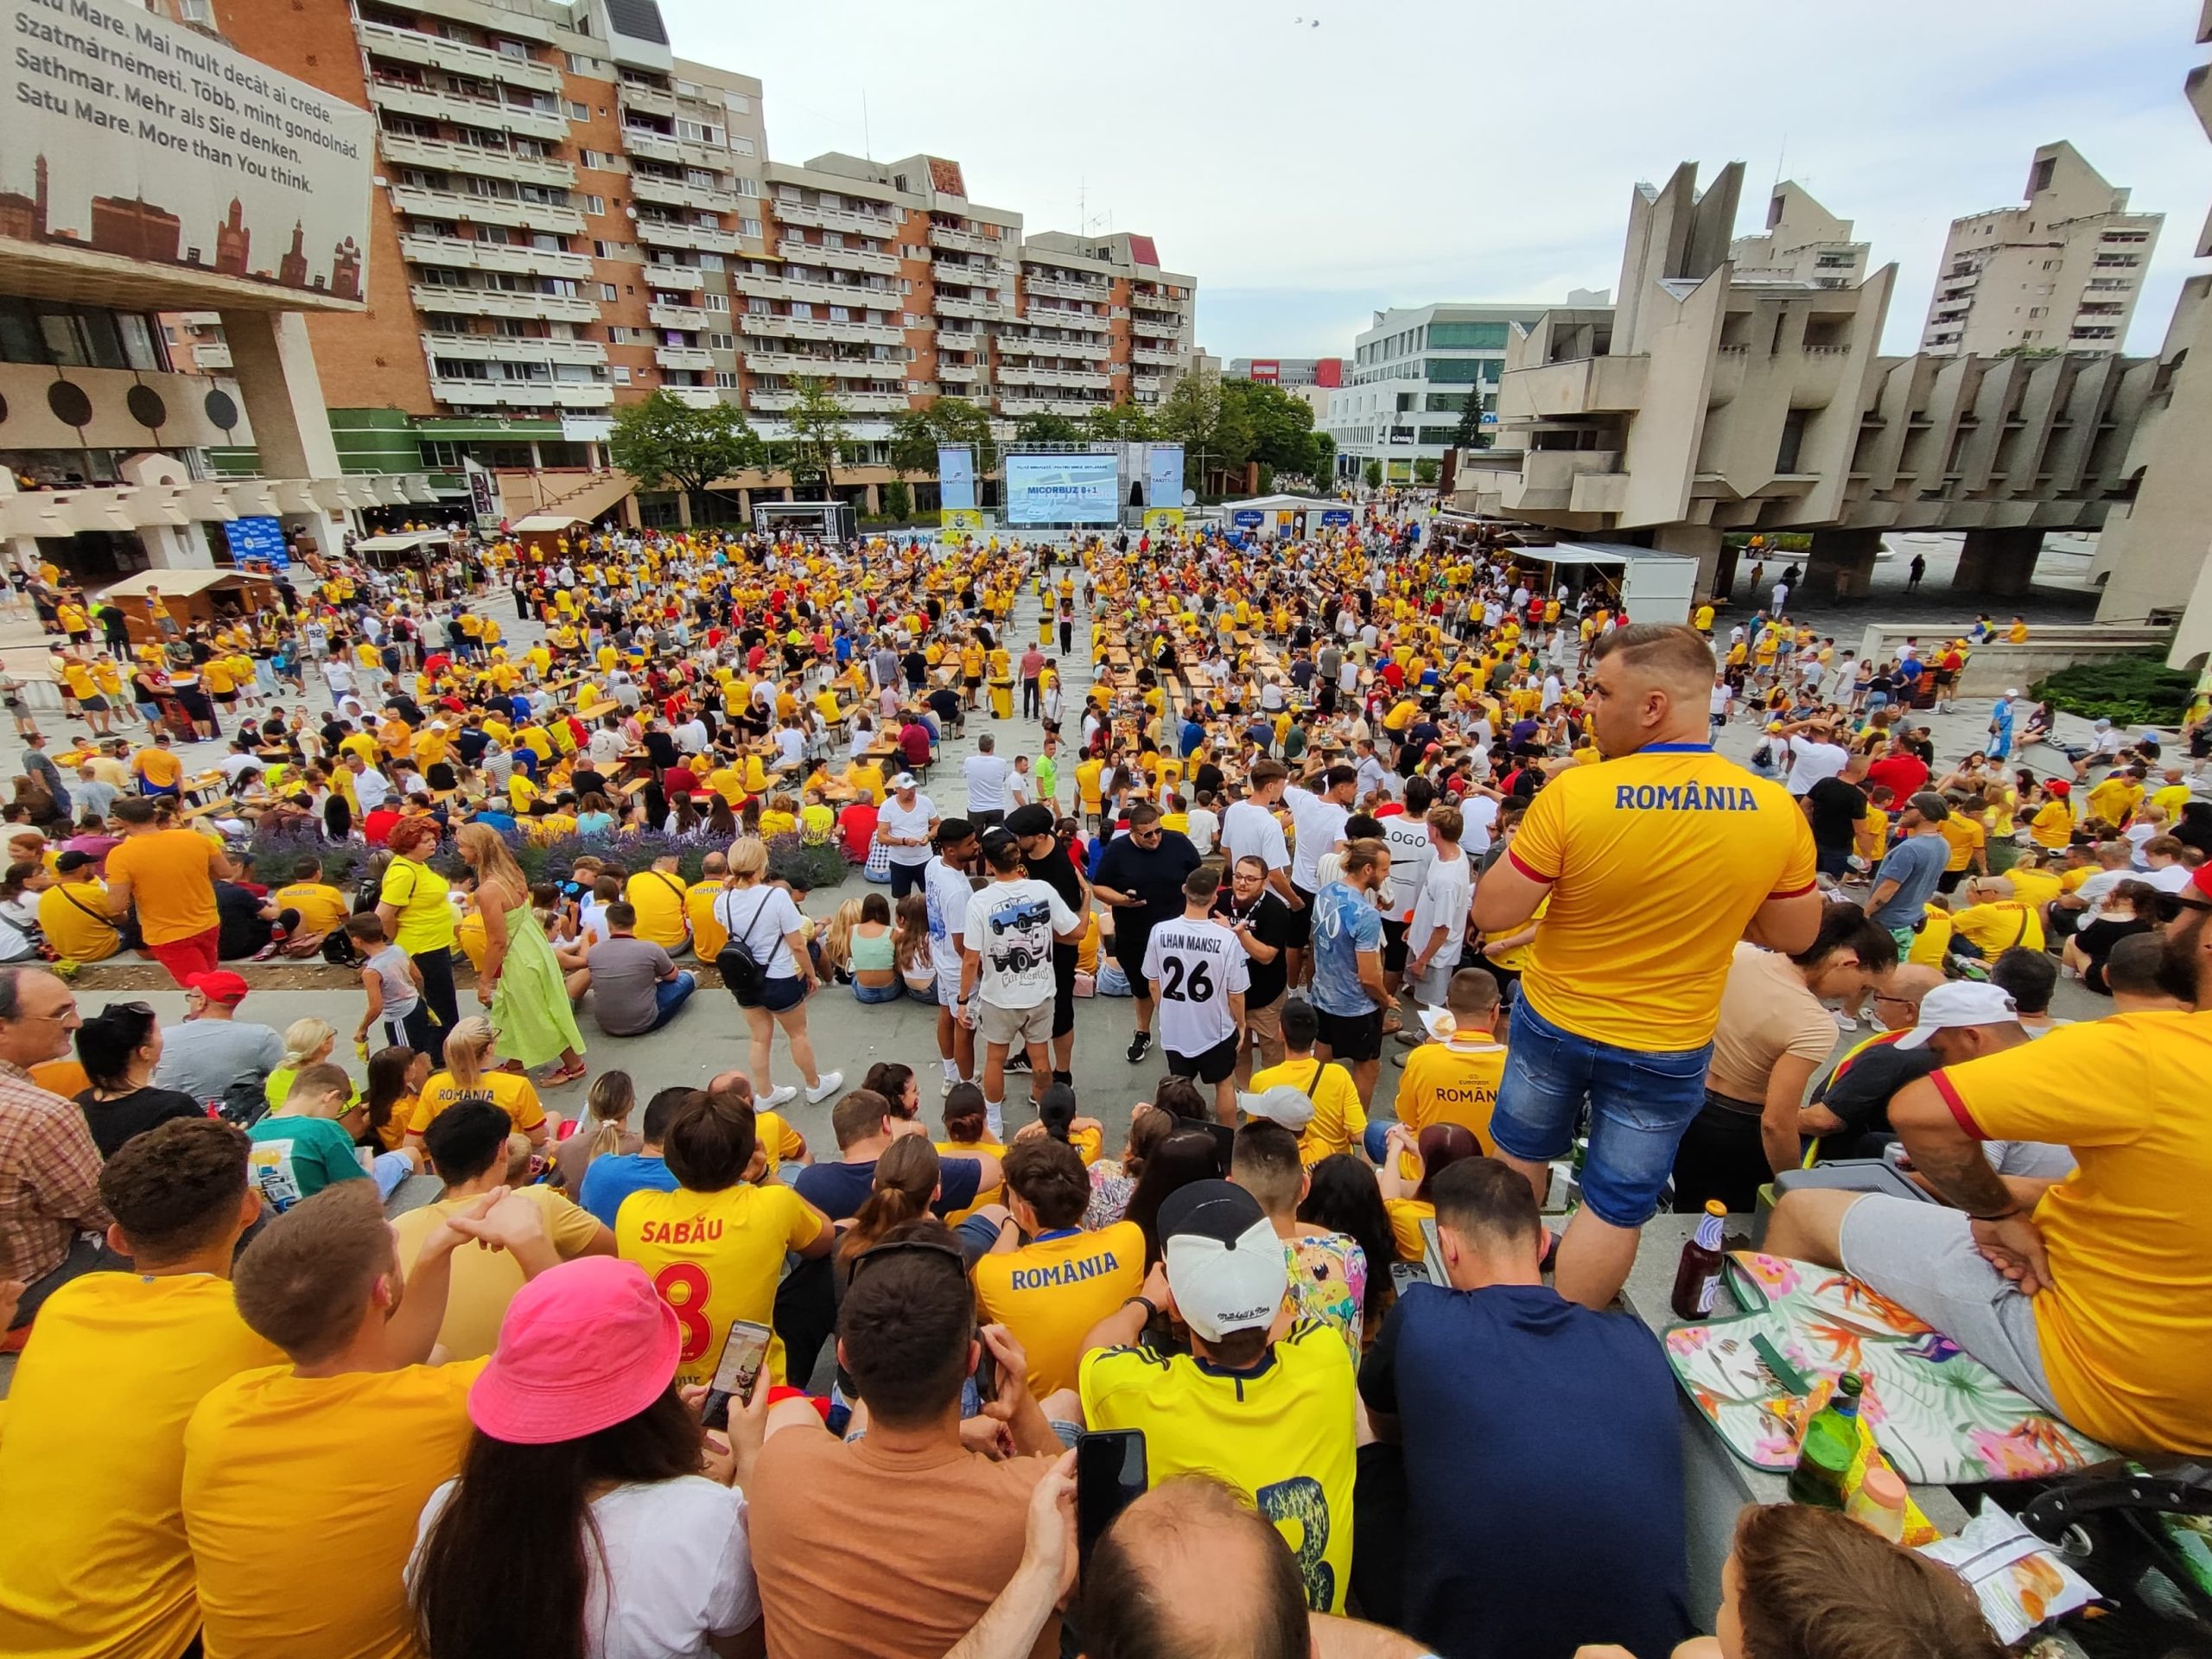 Satu Mare în galben: Peste 4.000 de suporteri adunati pentru meciul decisiv al Tricolorilor